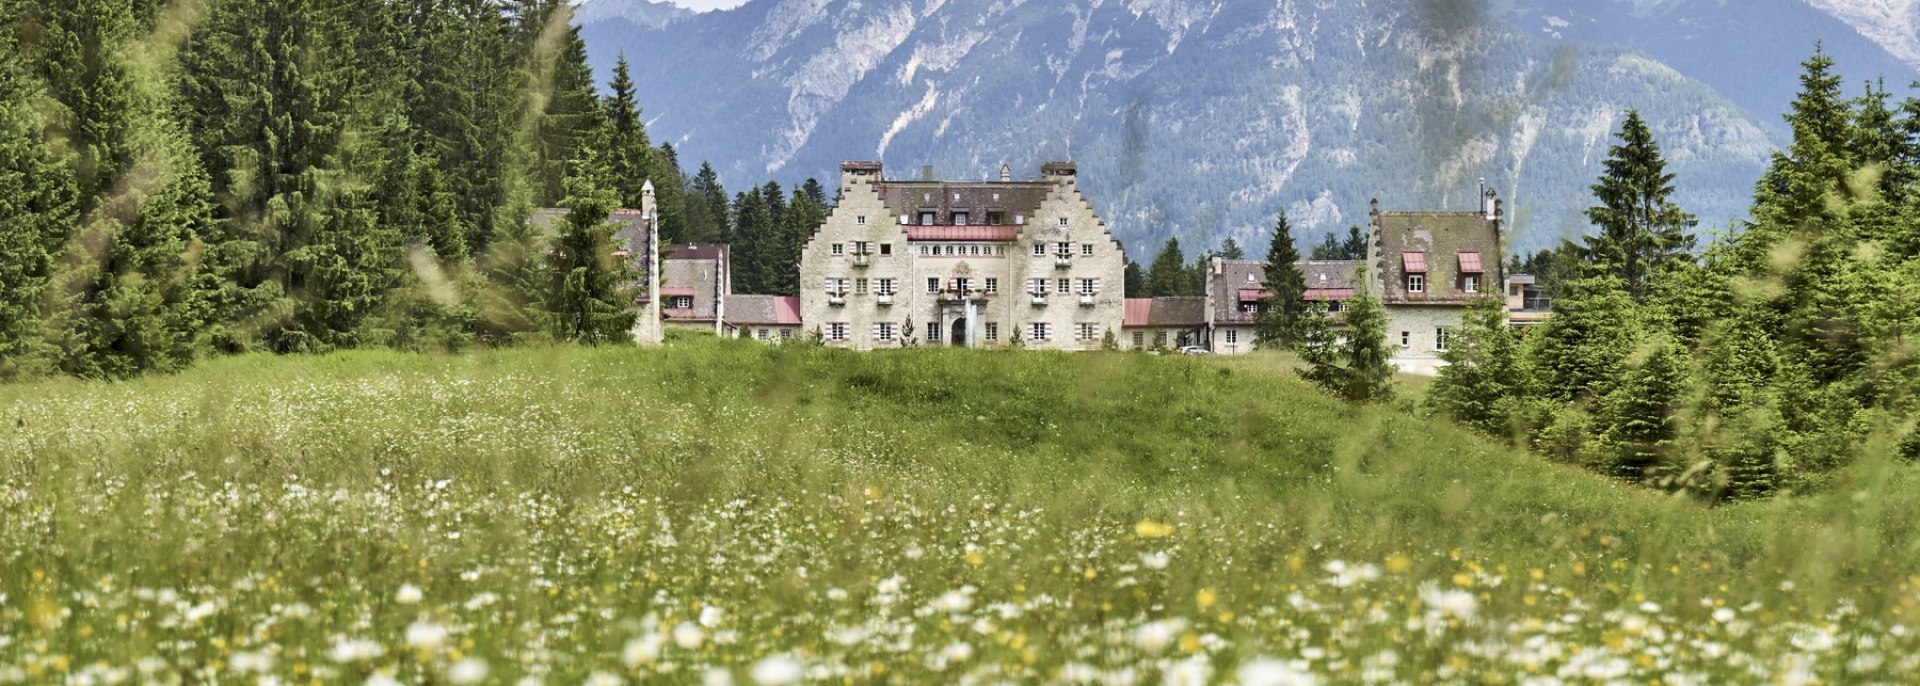 Das Kranzbach Hotel in Kranzbach, © Alpenwelt Karwendel |Marco Felgenhauer | woidlife photography 